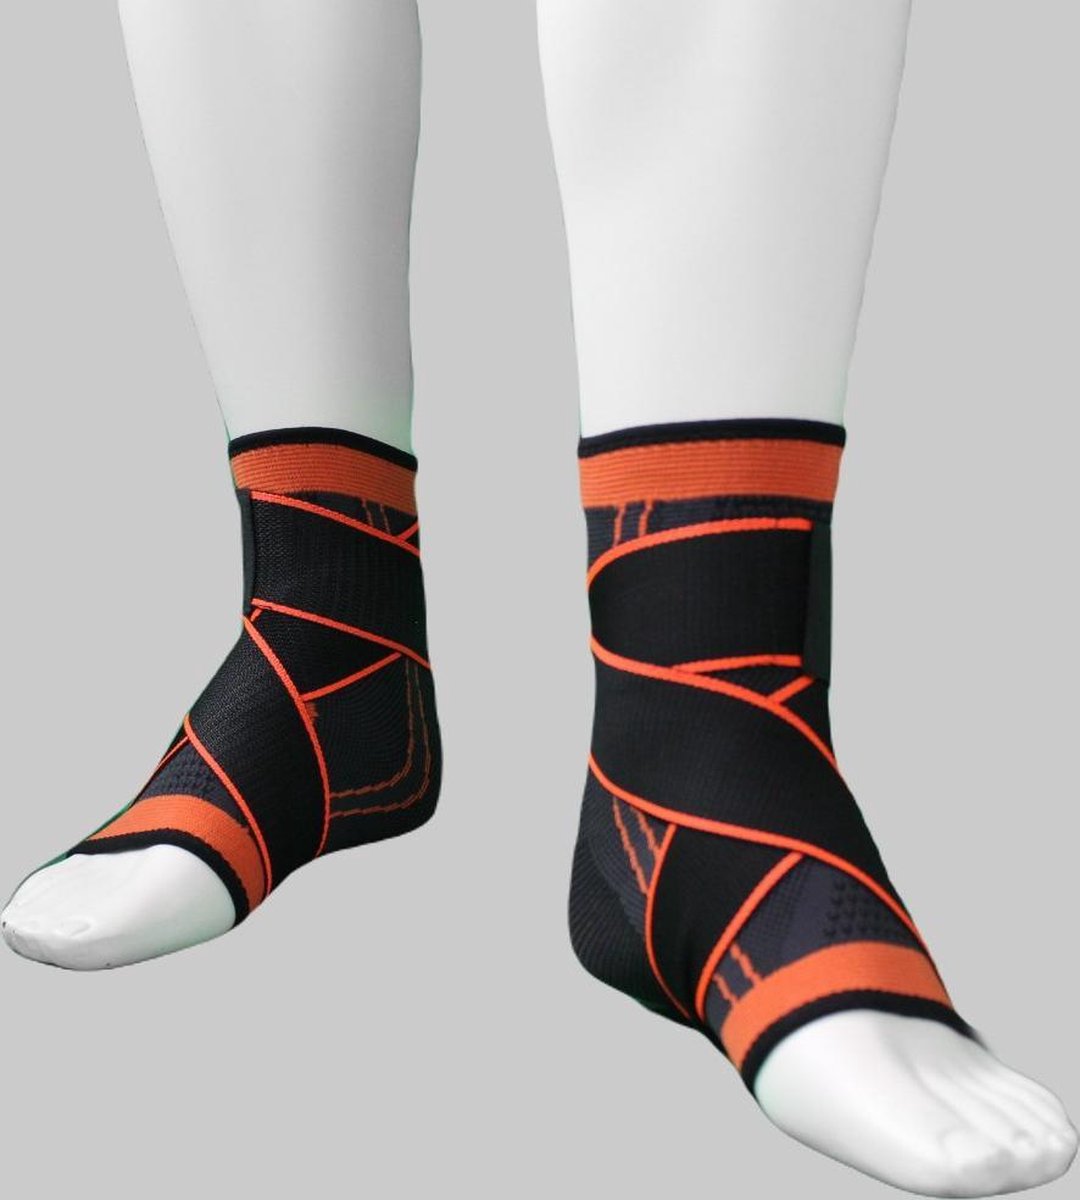 Chaussette de compression du pied 'DuoLock 3', Bracefox® - Rouge - L-Large  